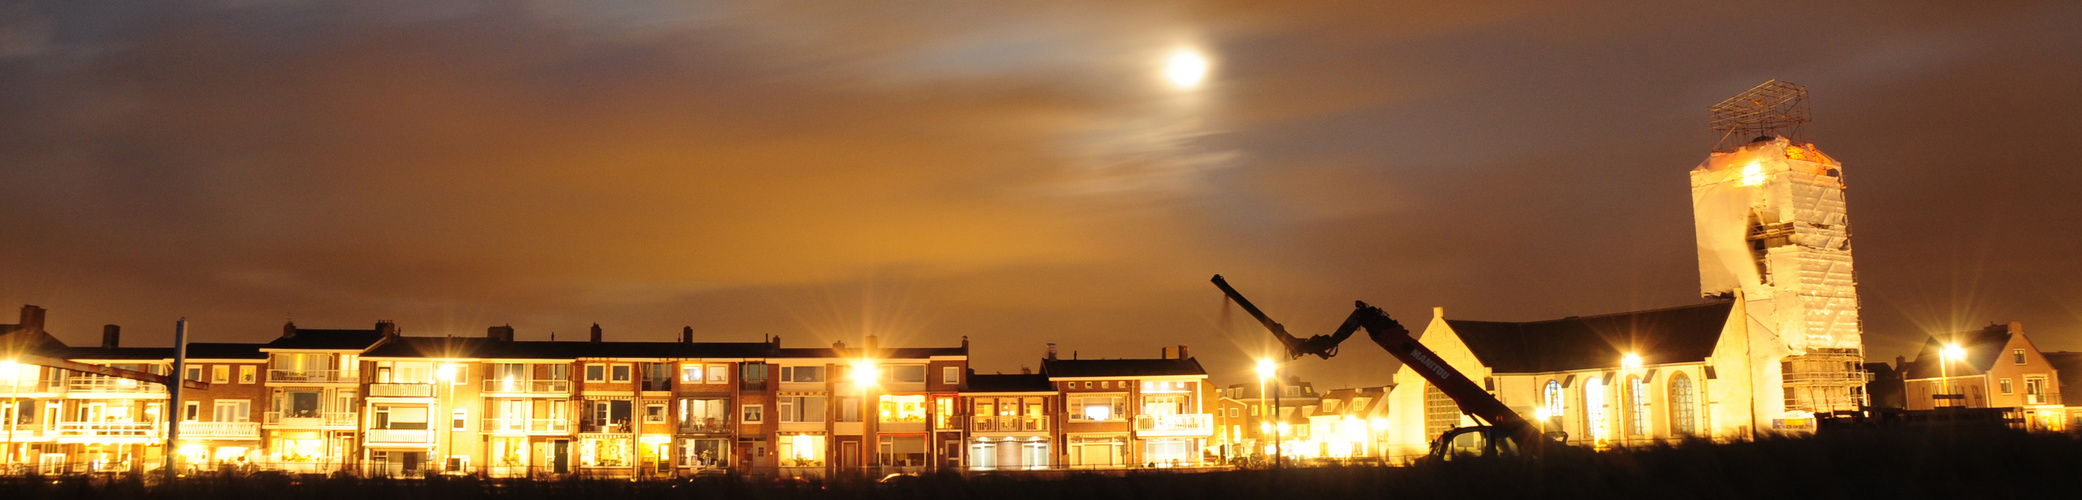 Katwijk bei Nacht